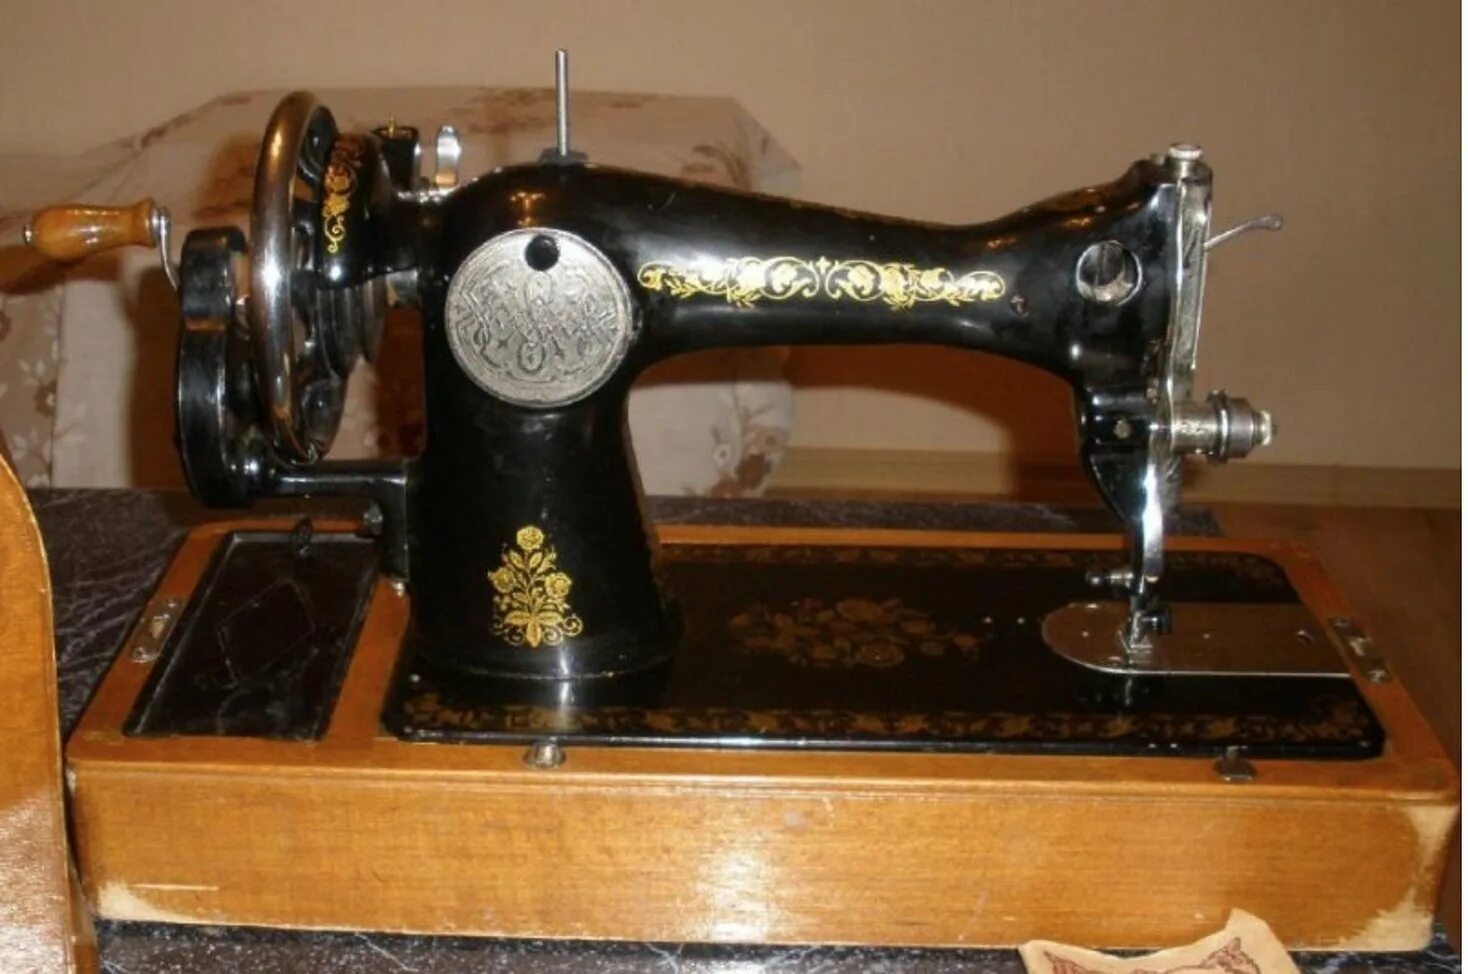 Швейная машинка Чайка Зингер. Сингер швейная машинка 1950. Подольск 1а швейная машинка. Швейная машинка Подольск Зингер Старая. Швейные машины старого образца